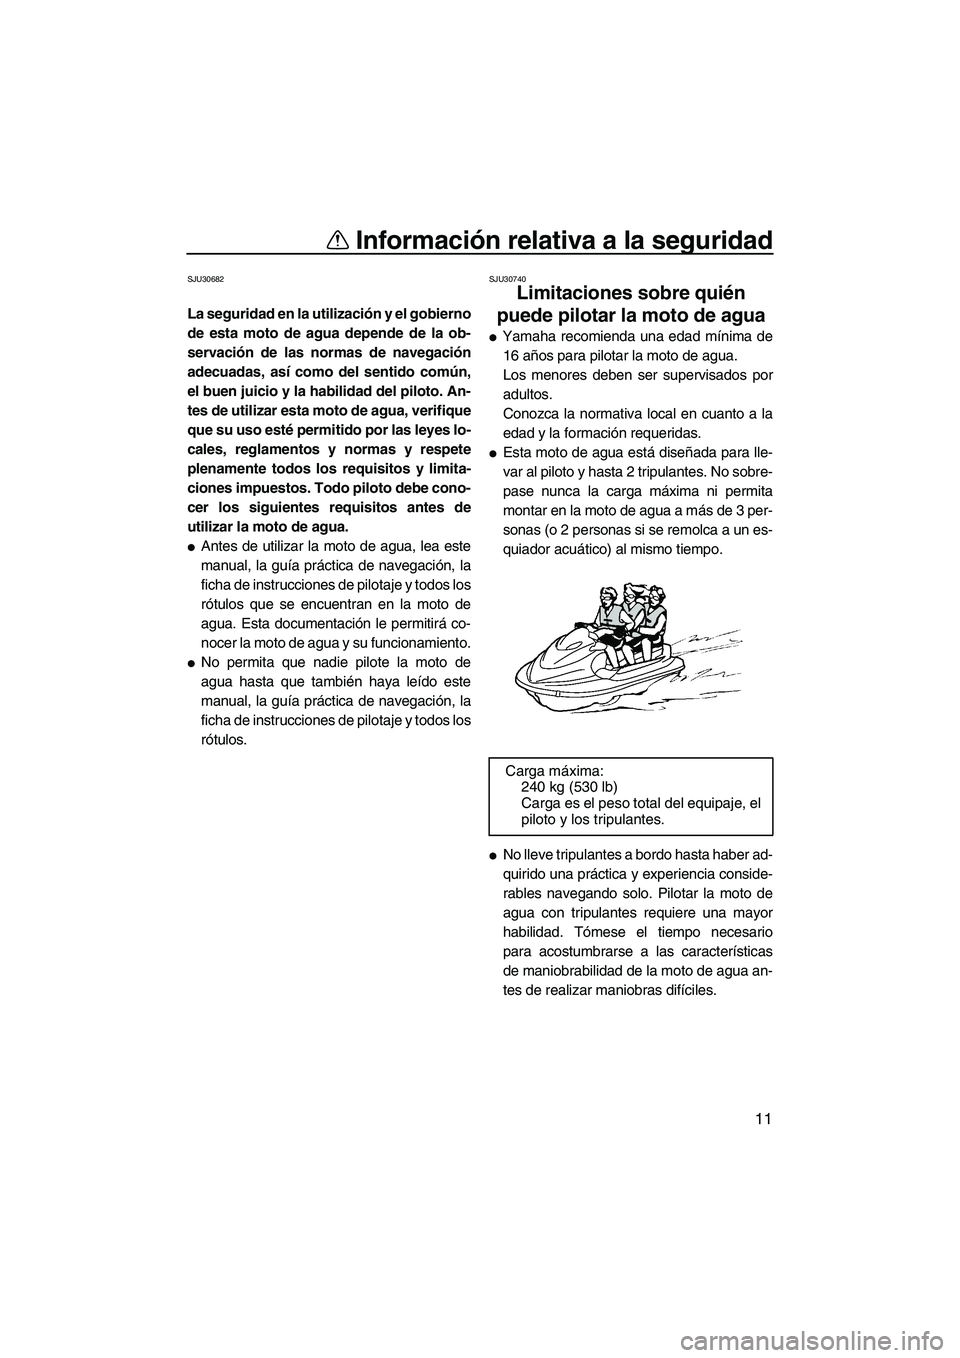 YAMAHA SVHO 2011  Manuale de Empleo (in Spanish) Información relativa a la seguridad
11
SJU30682
La seguridad en la utilización y el gobierno
de esta moto de agua depende de la ob-
servación de las normas de navegación
adecuadas, así como del s